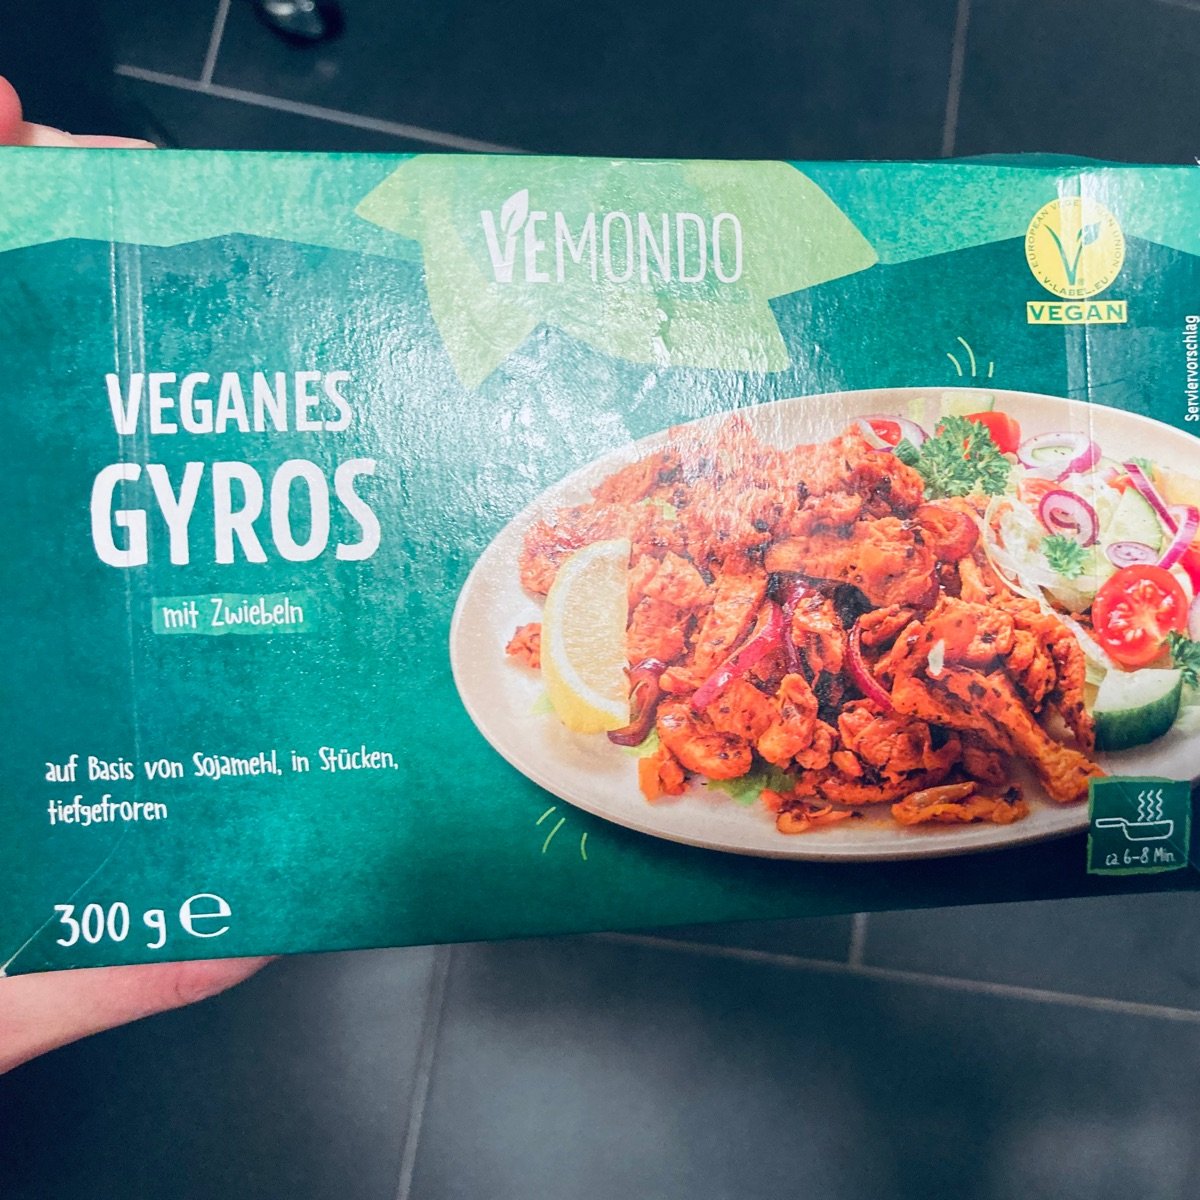 vegan Vemondo Gyros Zwiebeln, mit | Review abillion